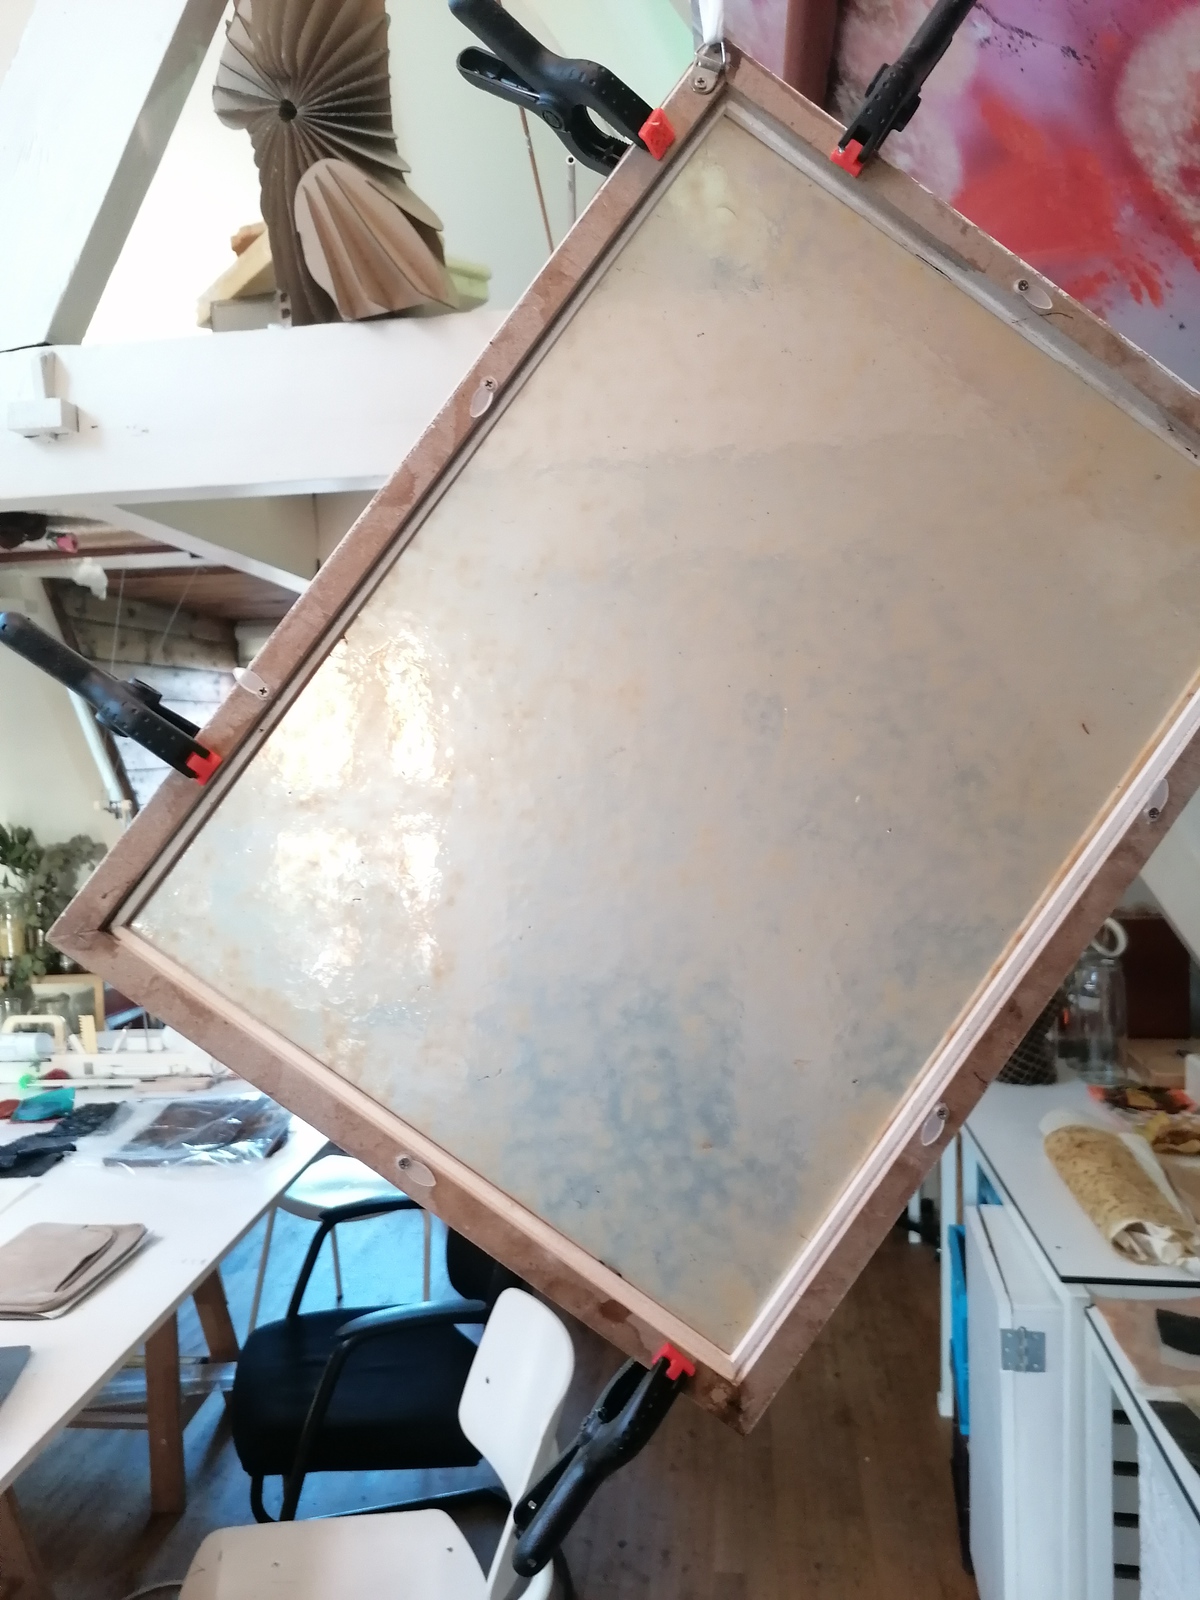 drying kombucha in a frame